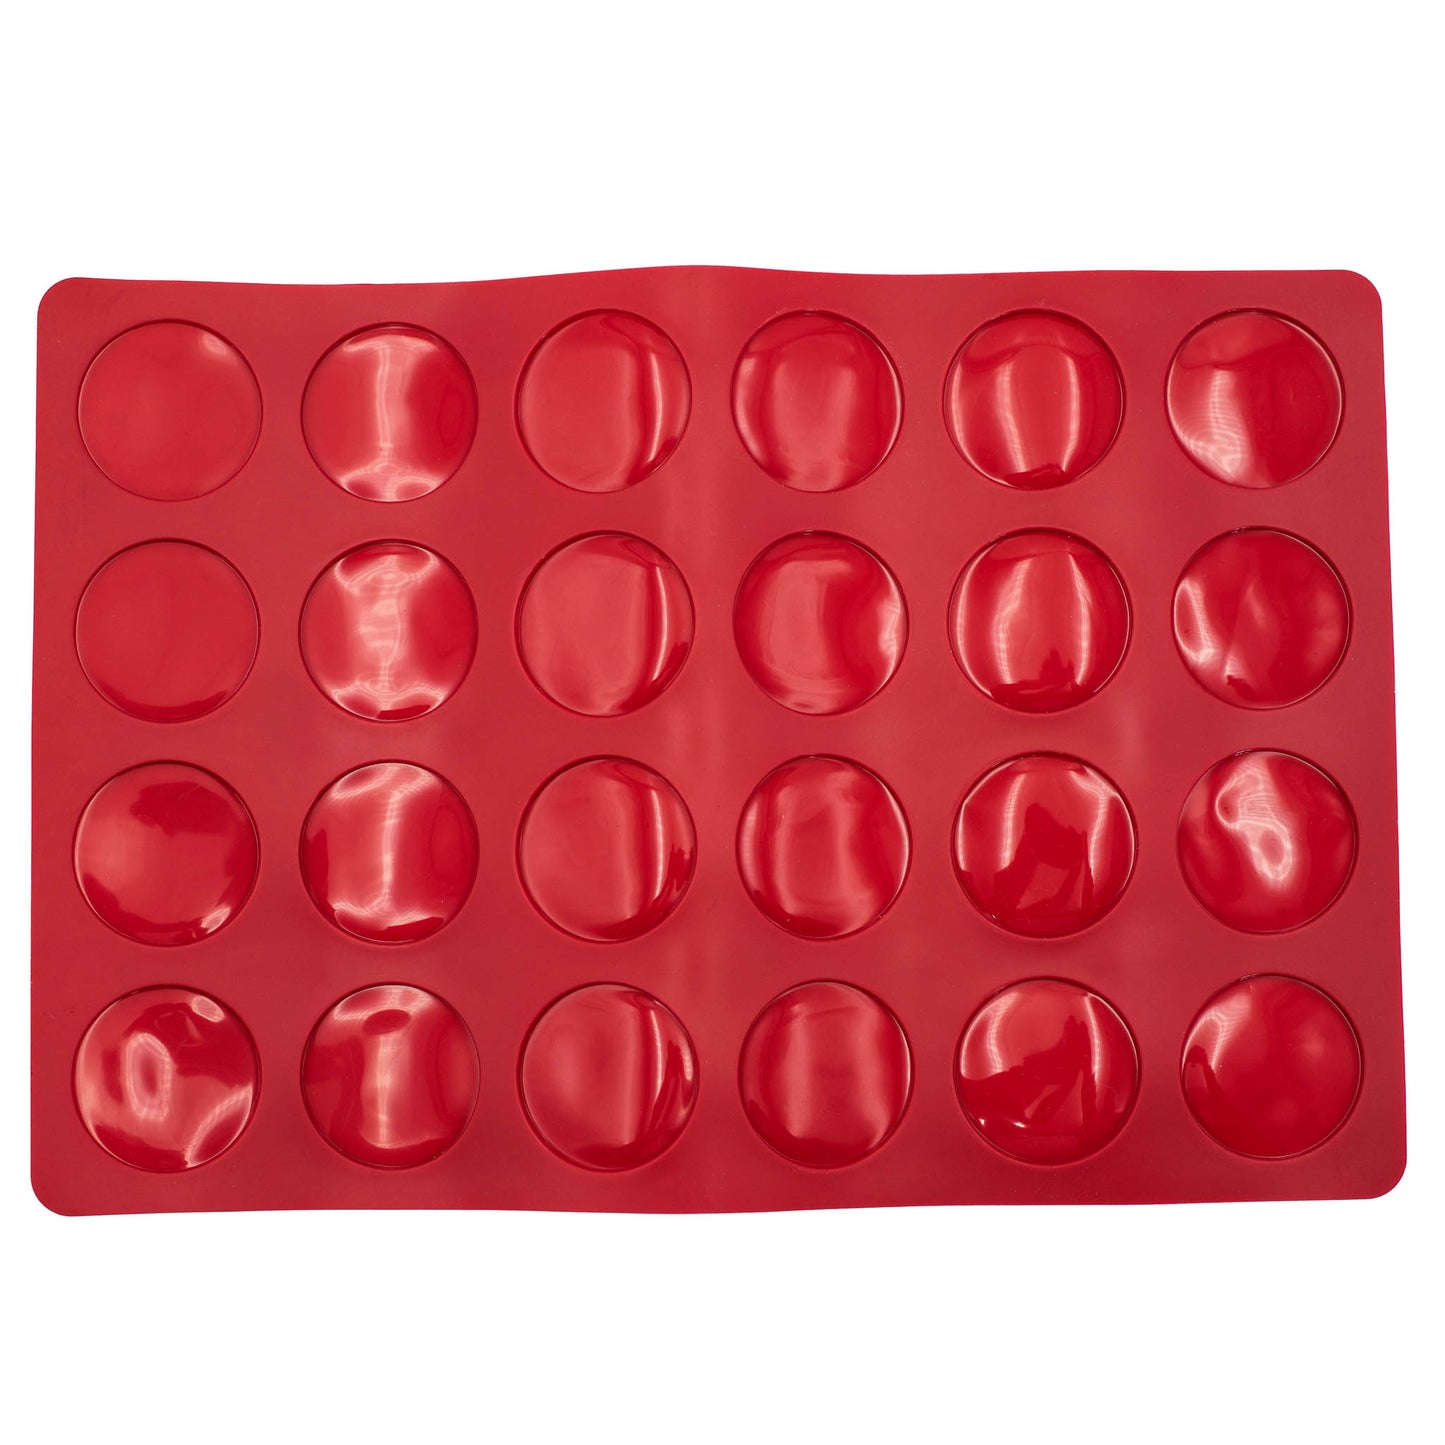 red silicone macaron baking sheet. 